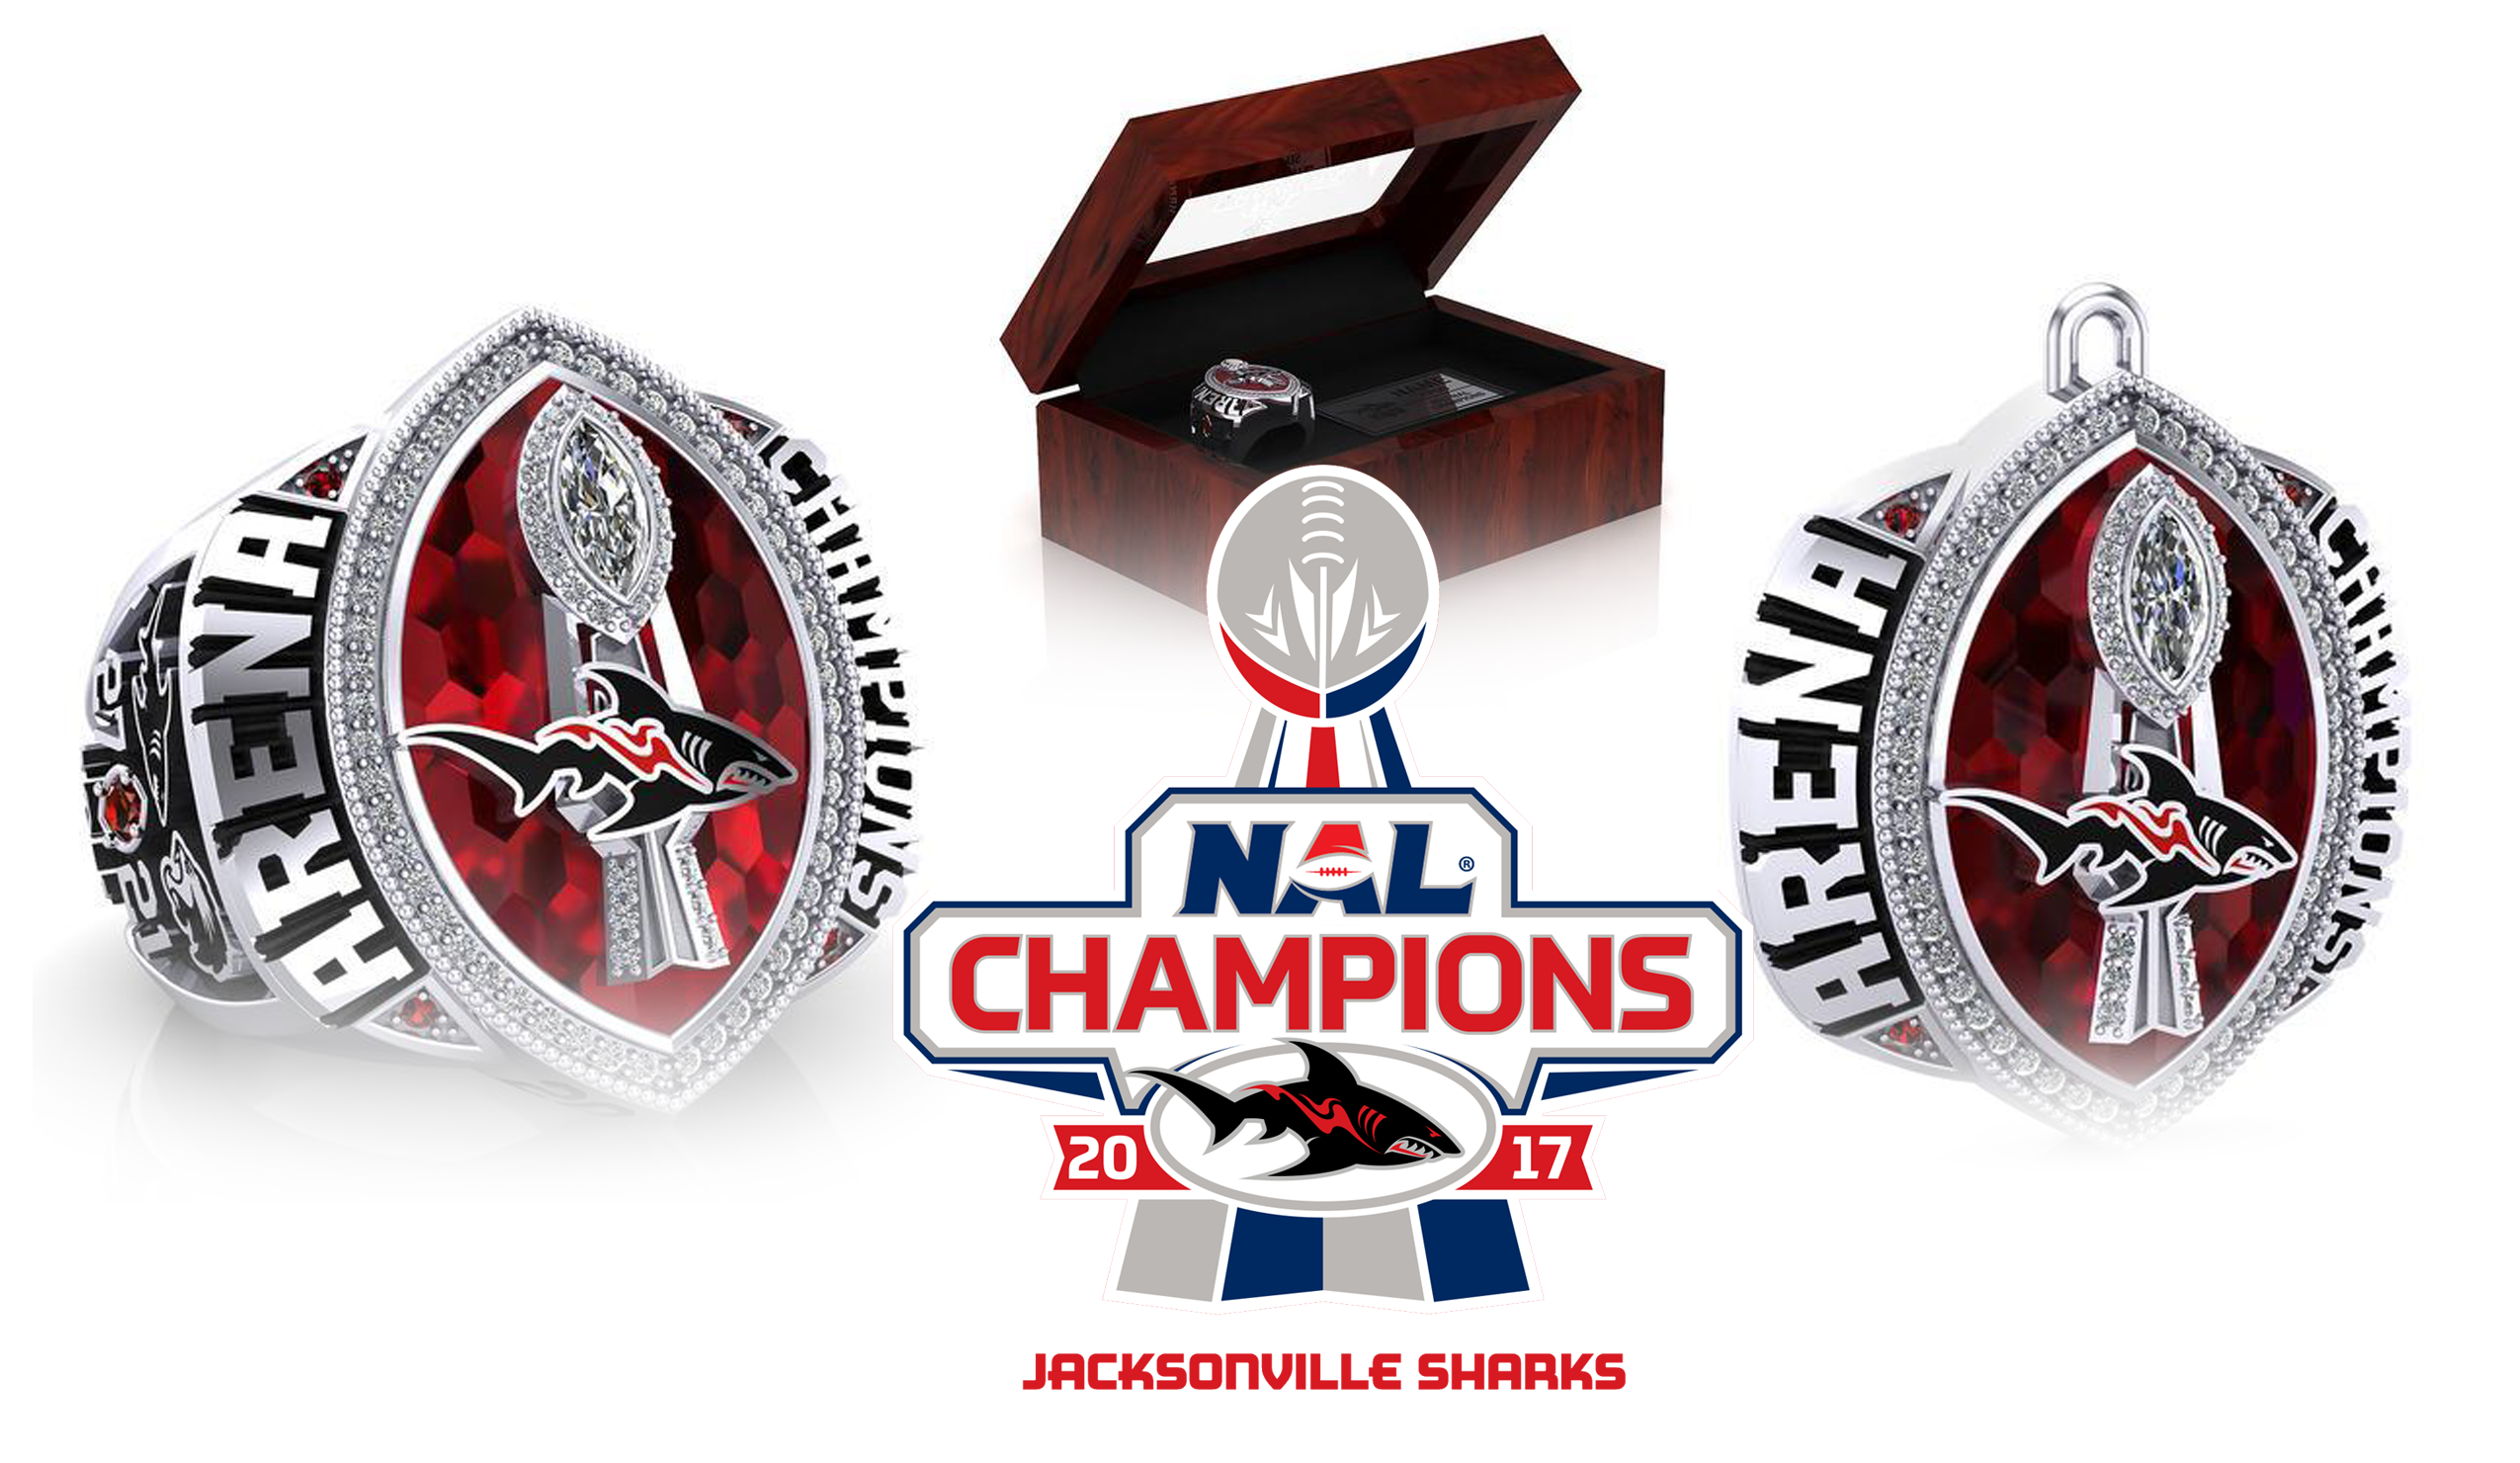 jacksonville sharks: championship rings